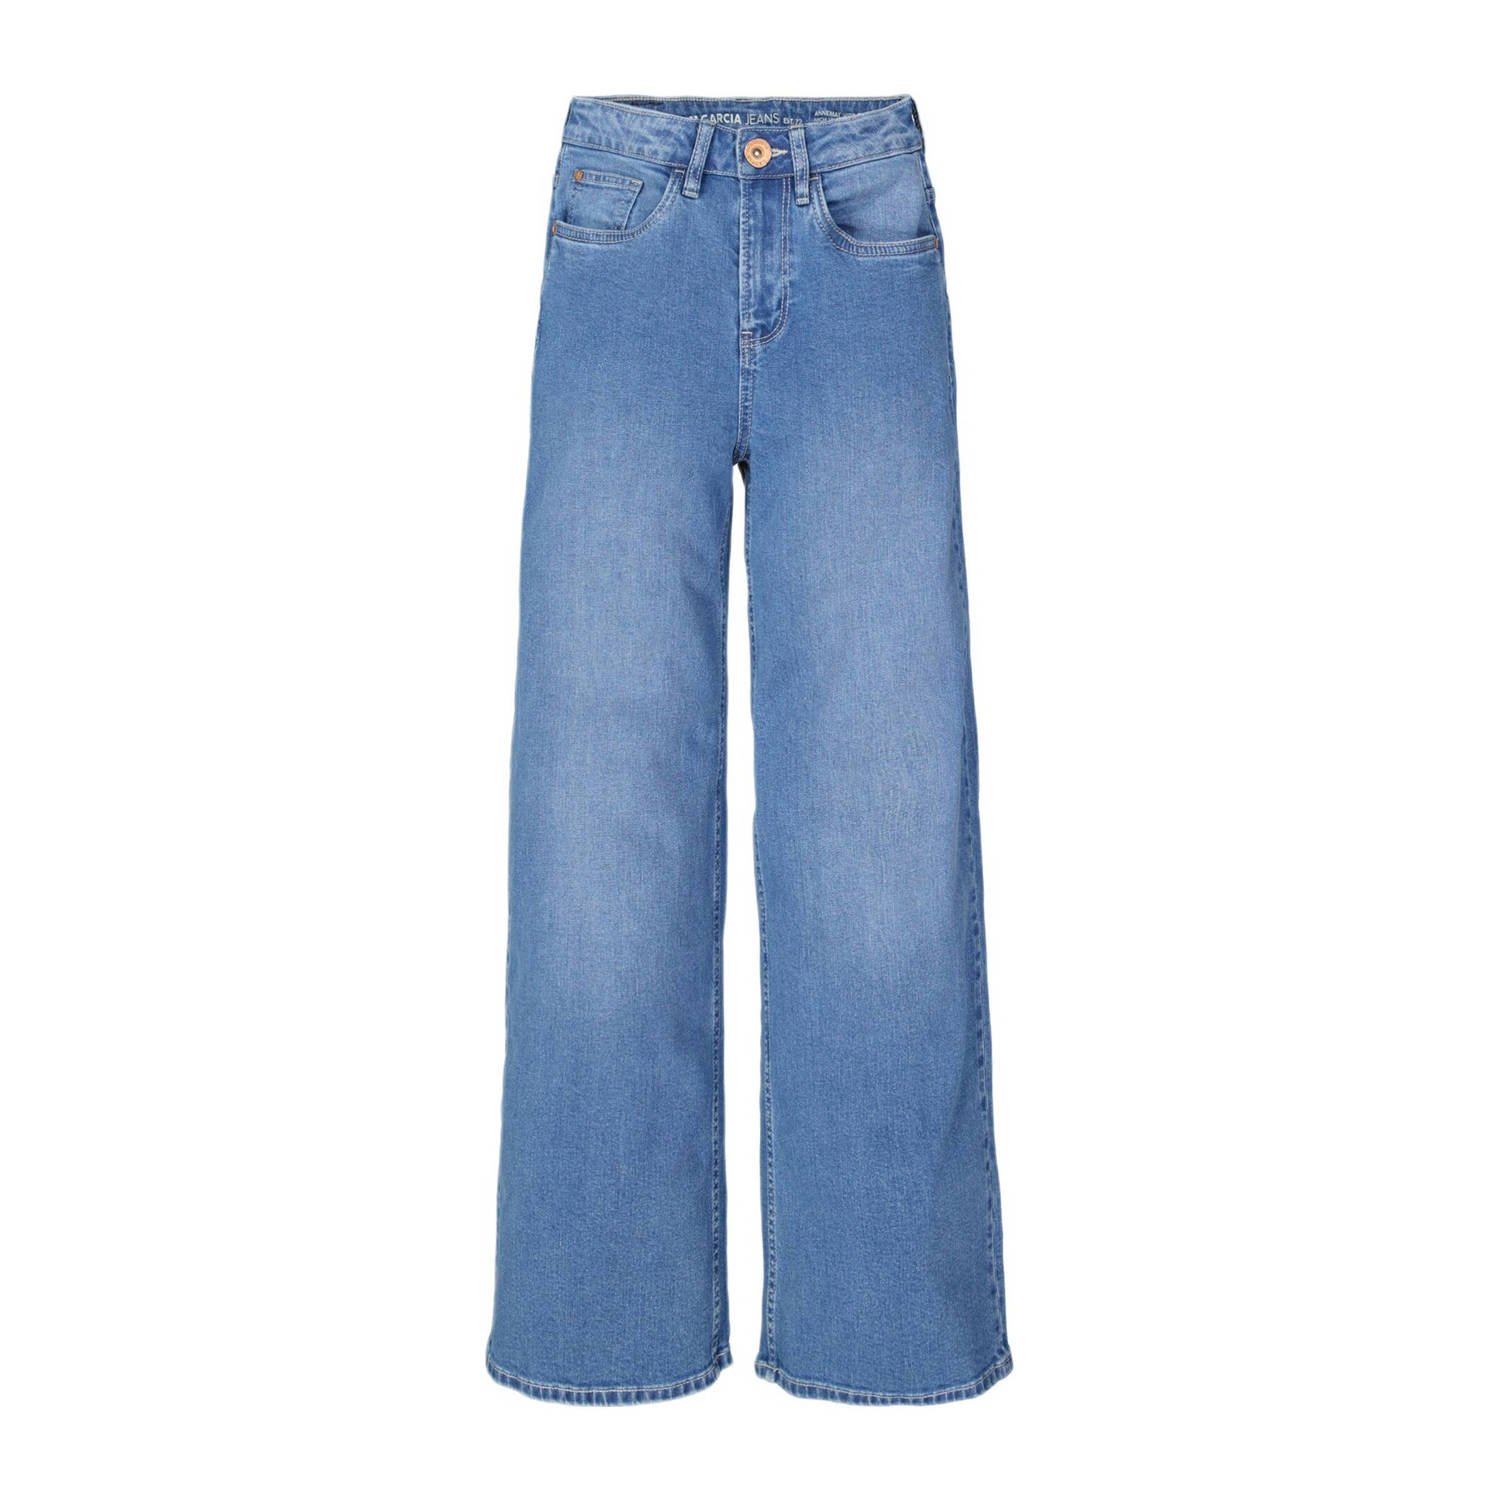 Garcia high waist wide leg jeans Annemay medium used Blauw Meisjes Stretchdenim 128